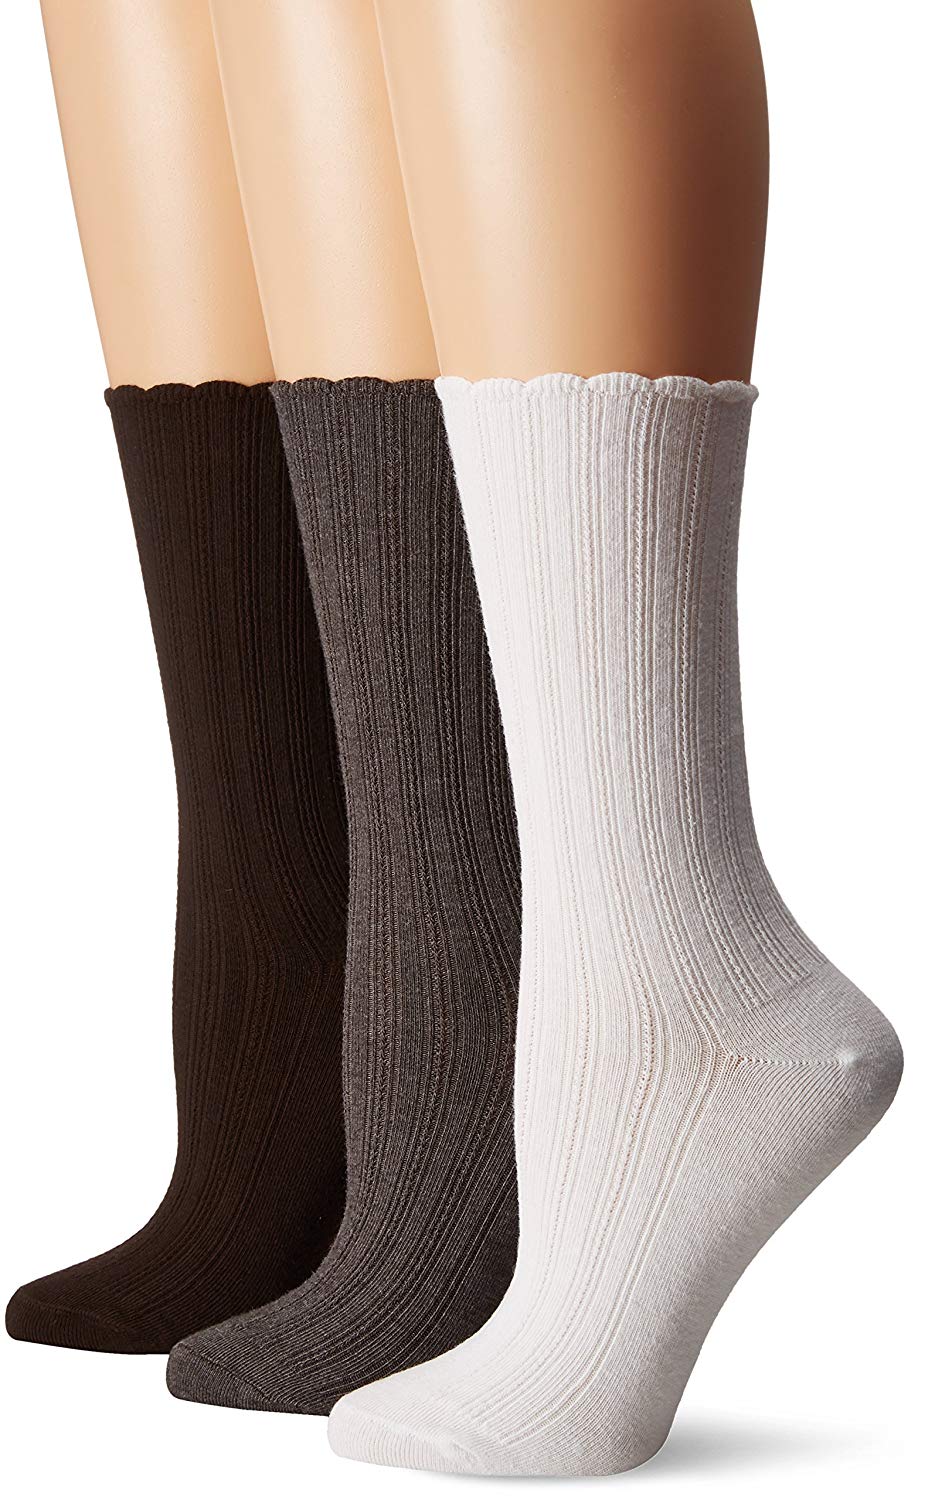 women's above the knee socks